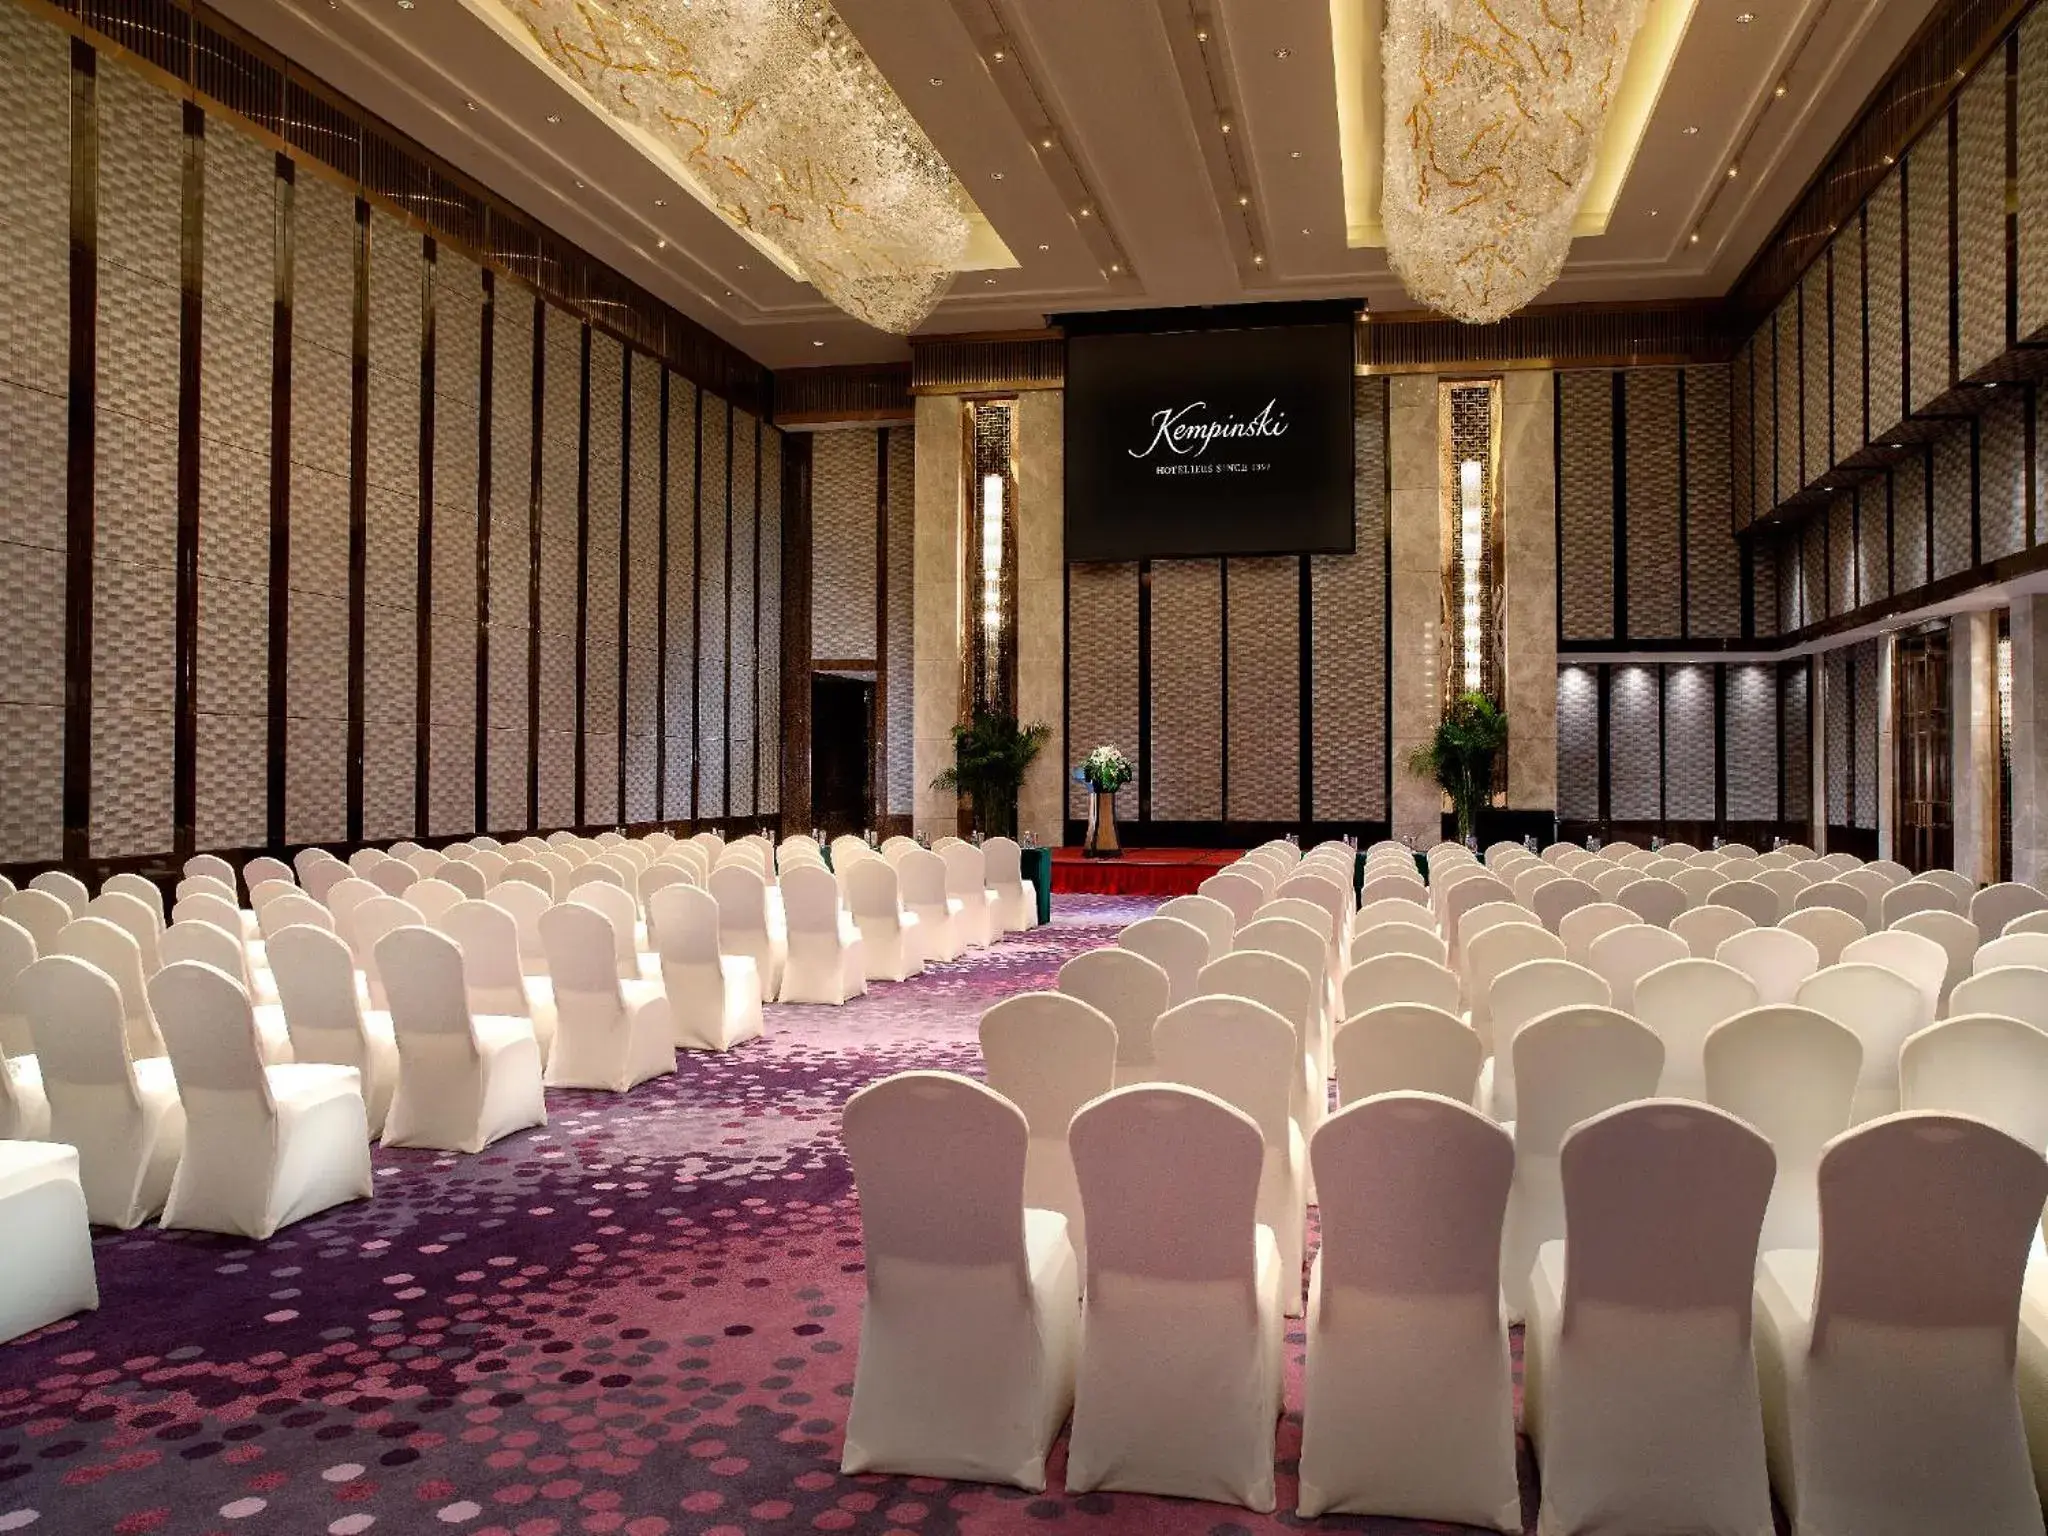 Banquet/Function facilities, Banquet Facilities in Kempinski Hotel Changsha